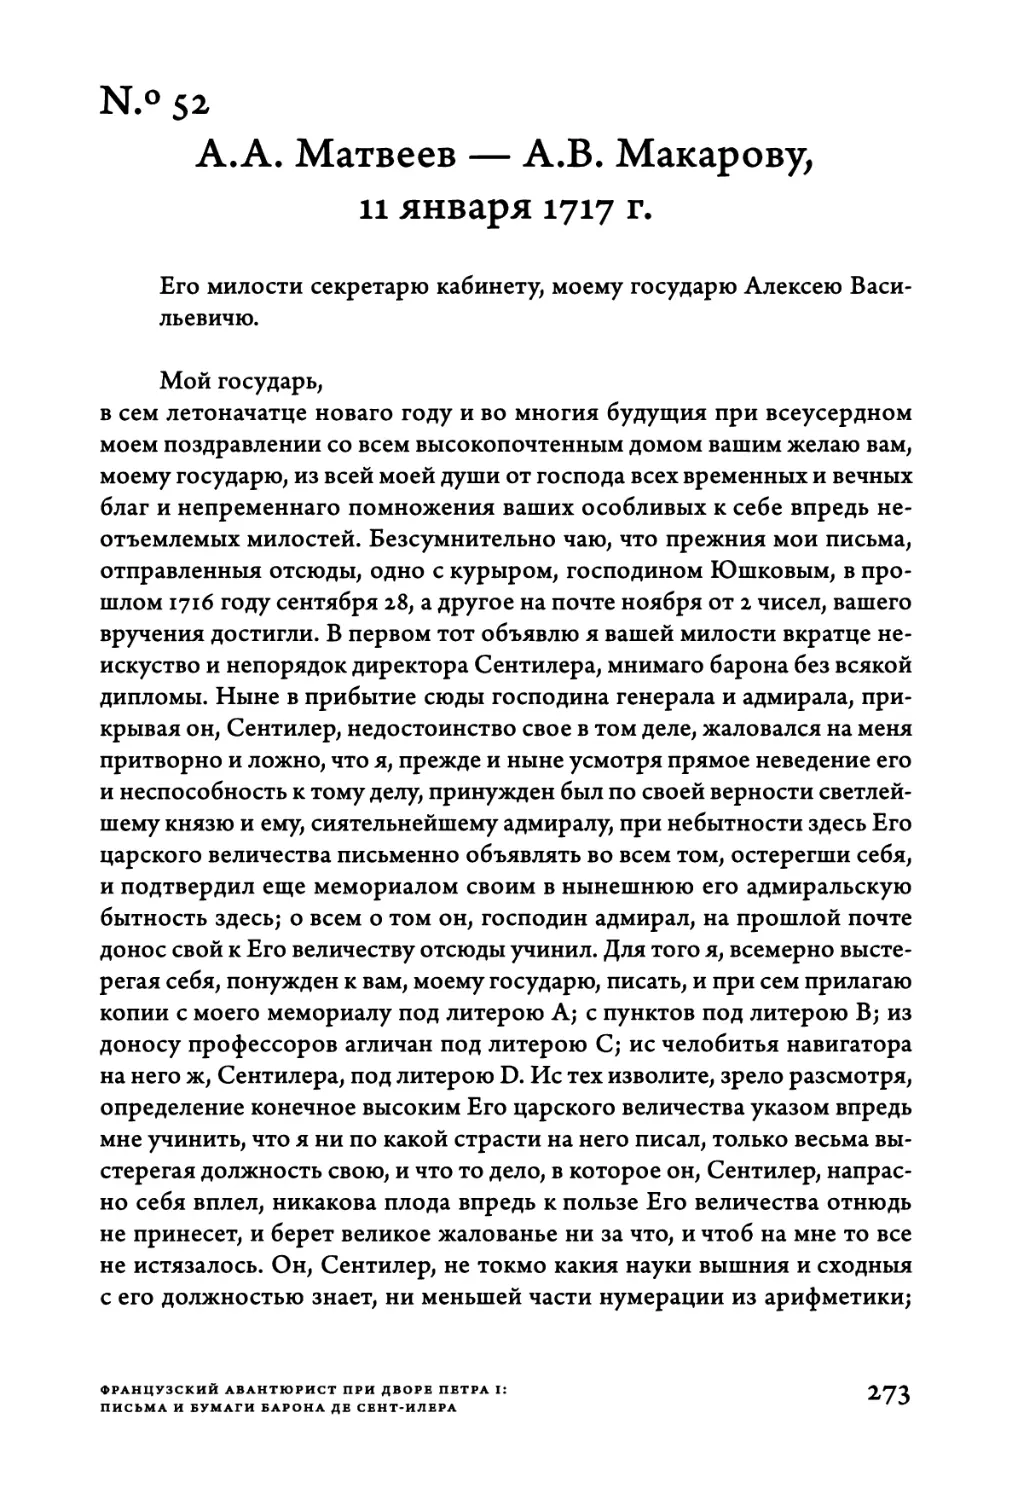 Ν.°52. A.A. Матвеев — A.B. Макарову, 11 января 1717 г.